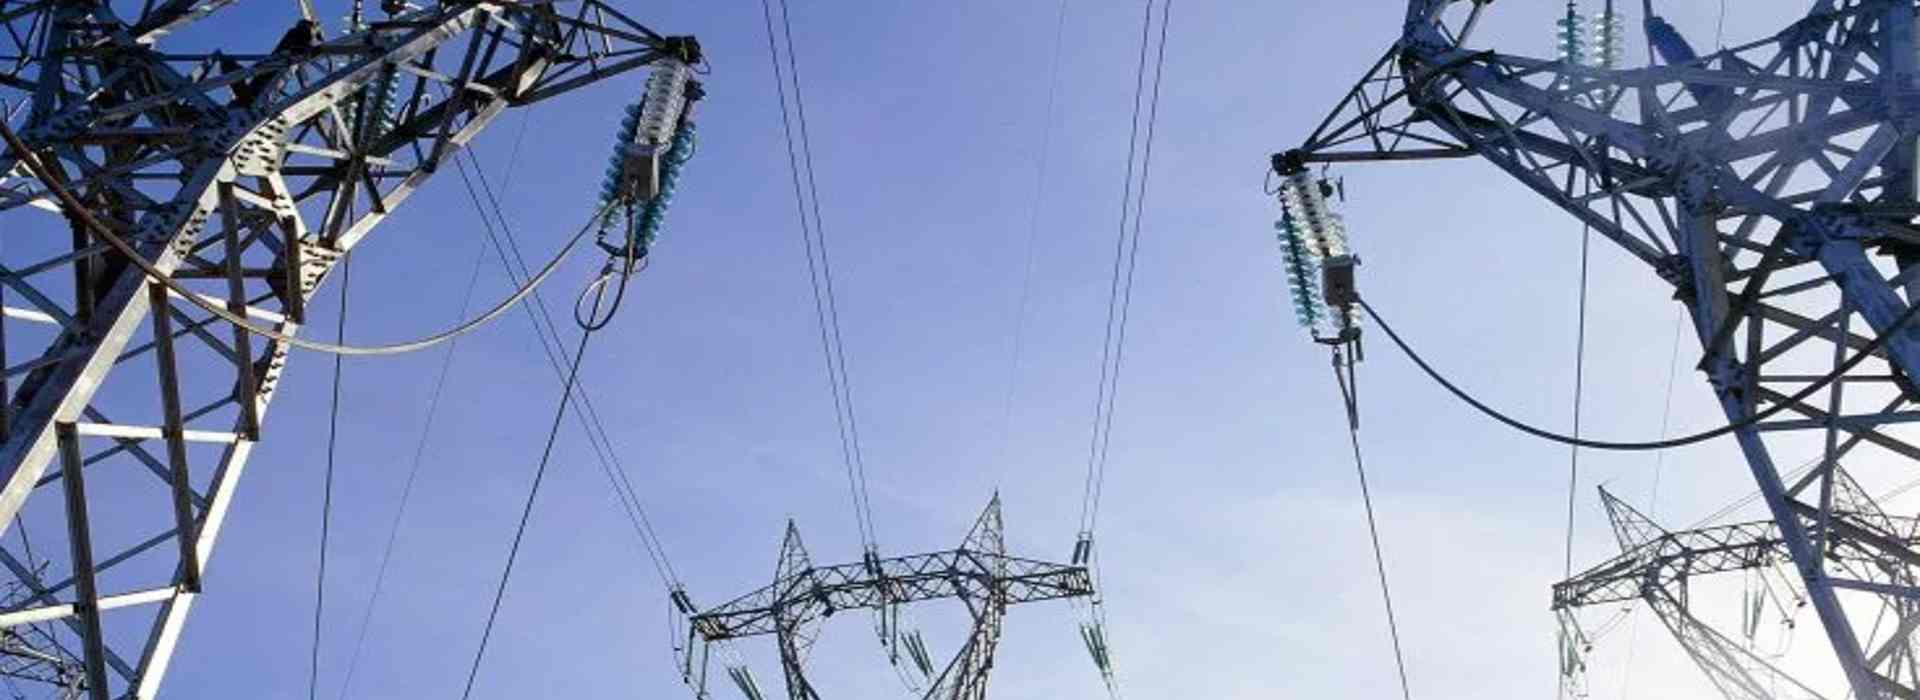 Bollette, tariffe dell'elettricità a -55,3% da aprile a giugno